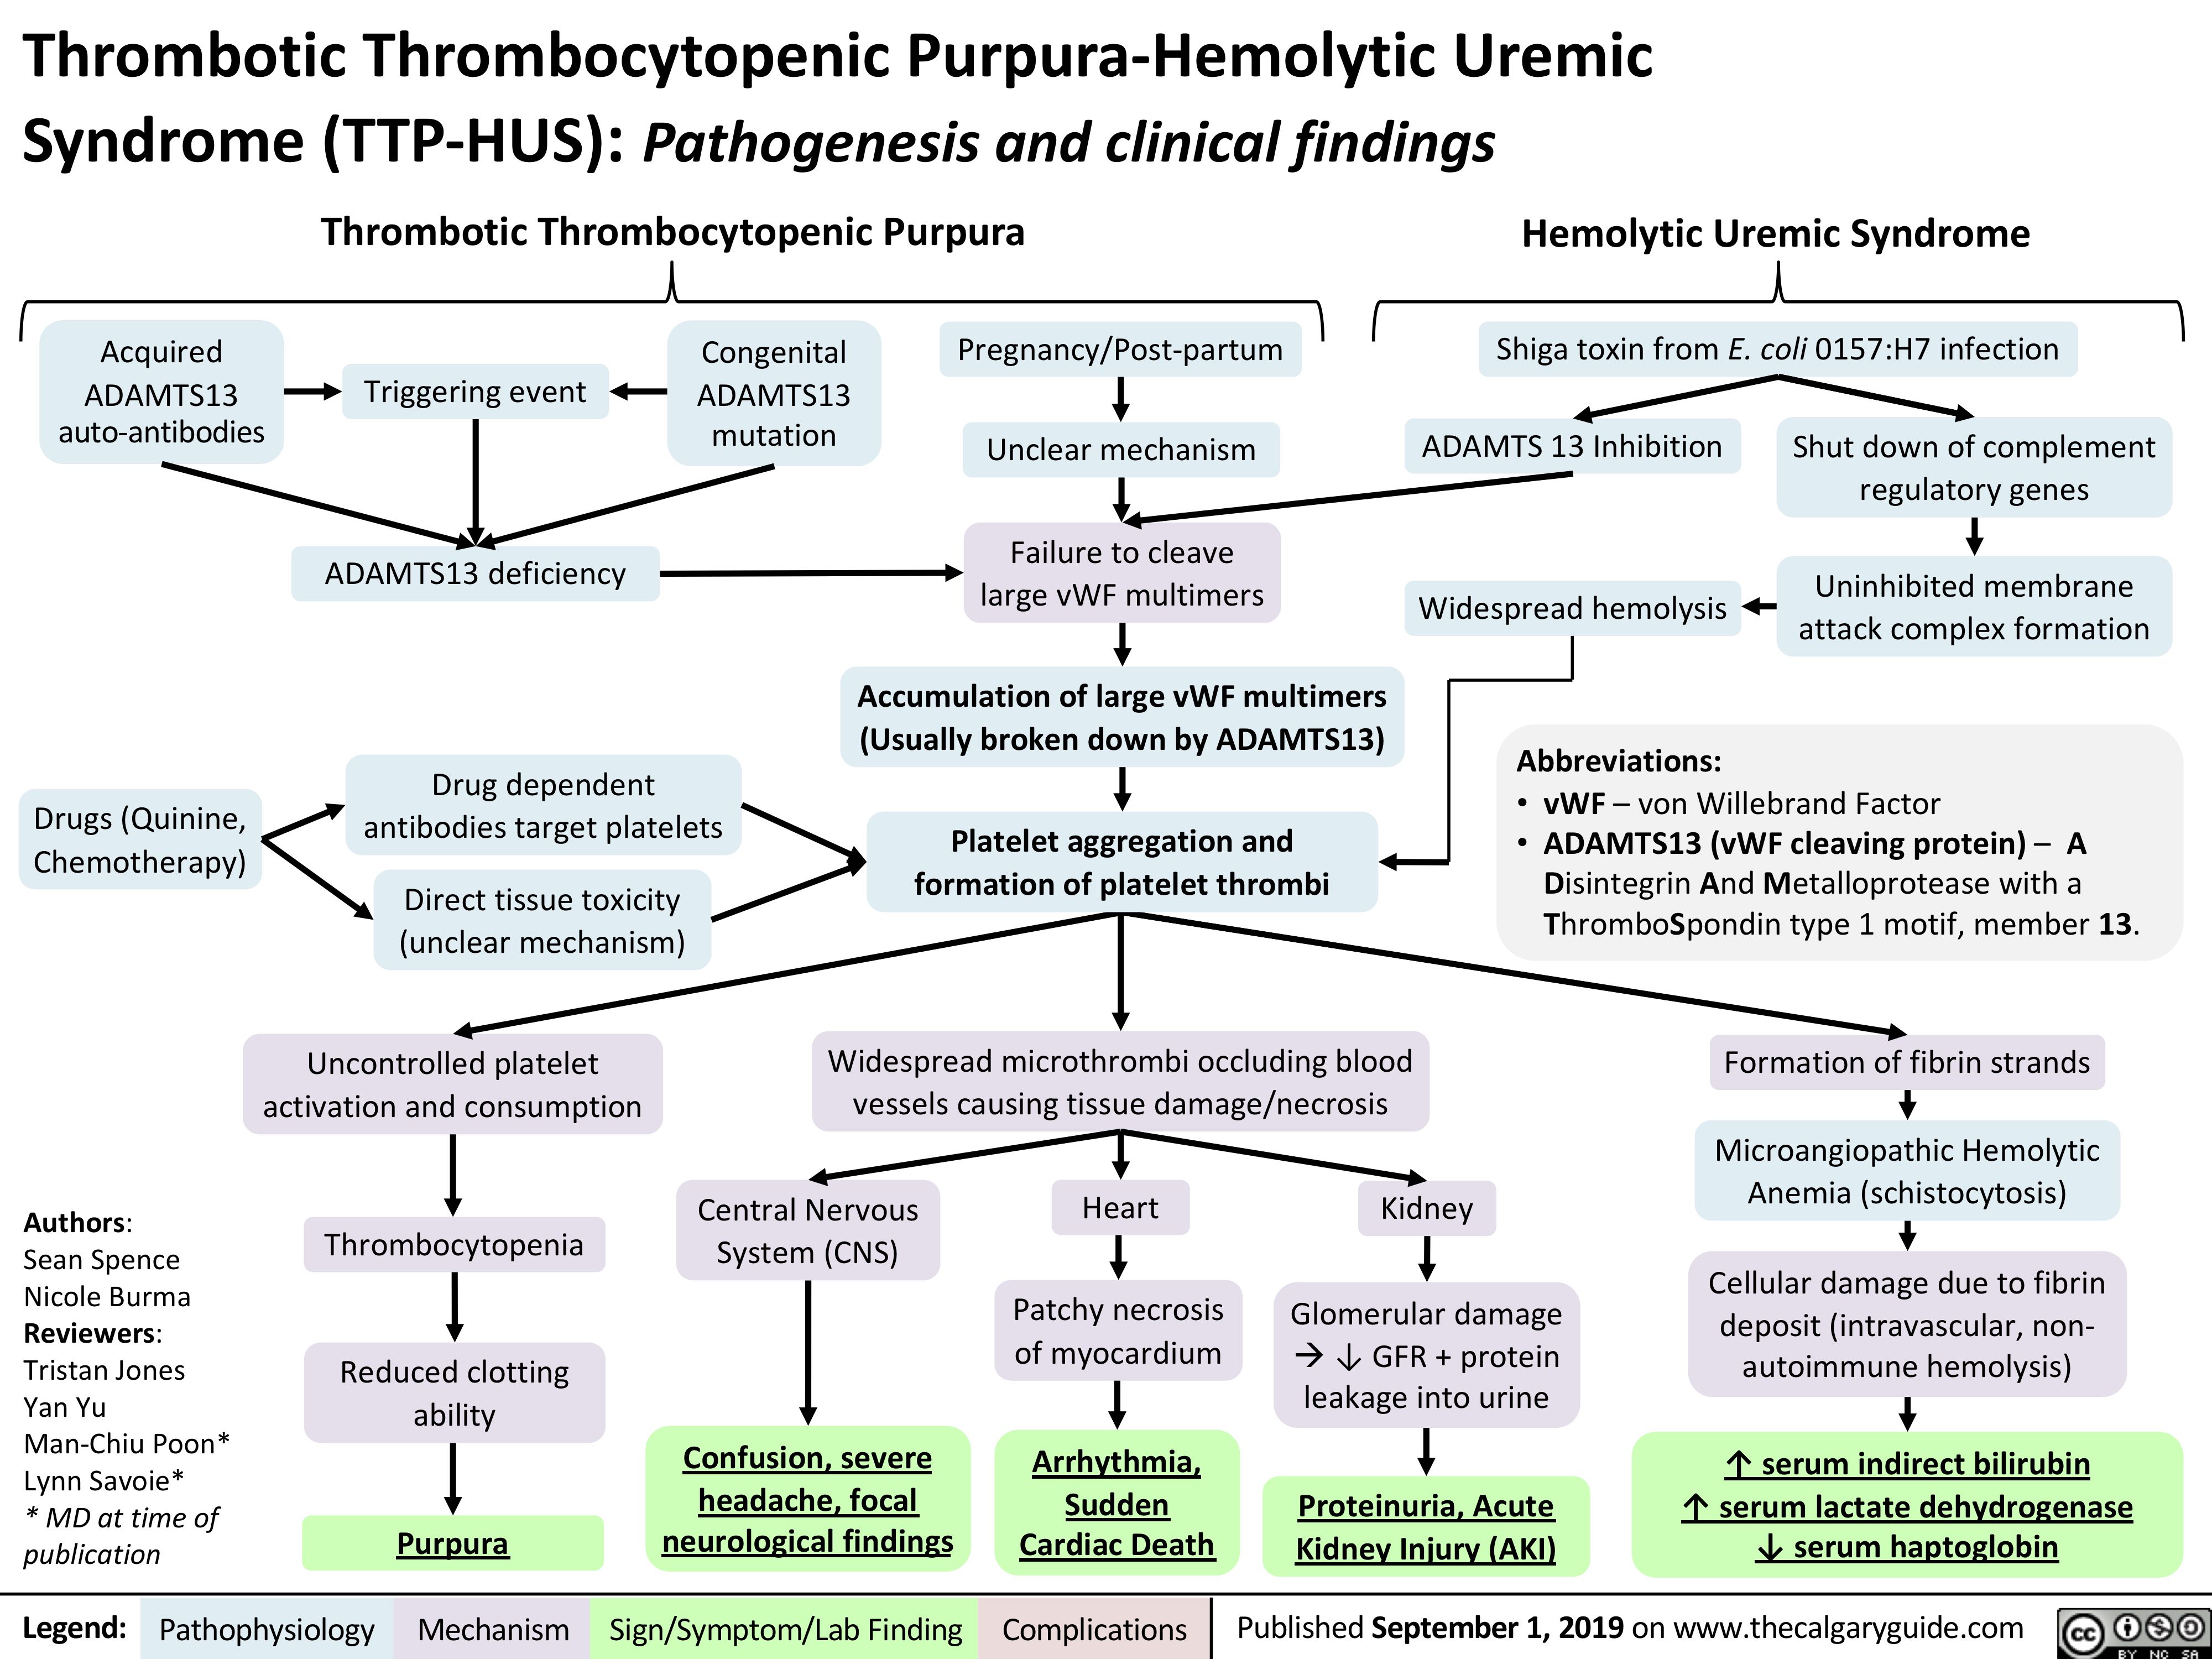 thrombotic thrombocytopenic purpura (ttp)